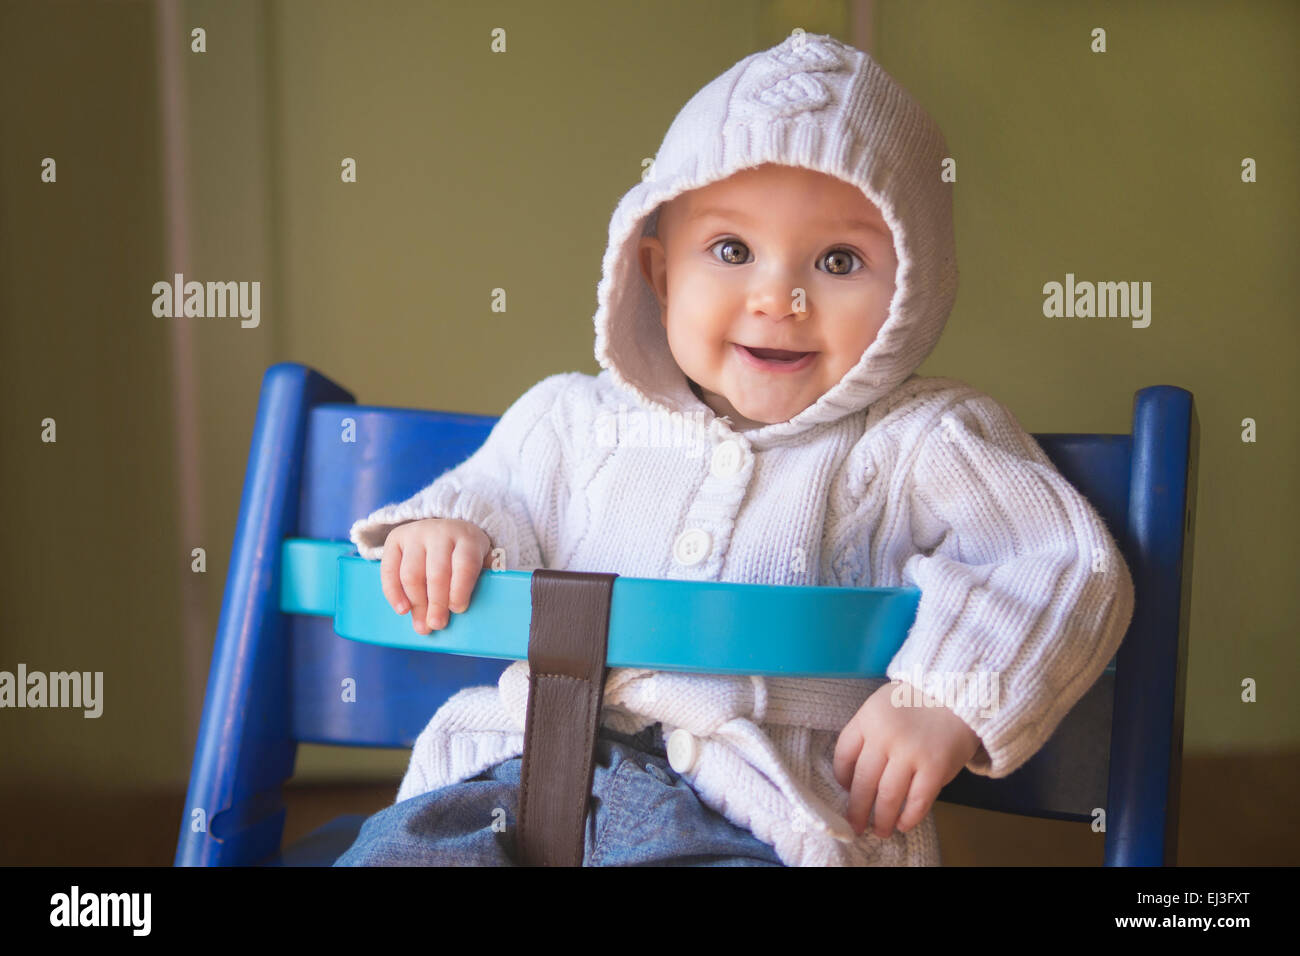 Adorabile bambina in una felpa con cappuccio bianco seduto in una sedia bambino e sorridente nella fotocamera. Foto Stock